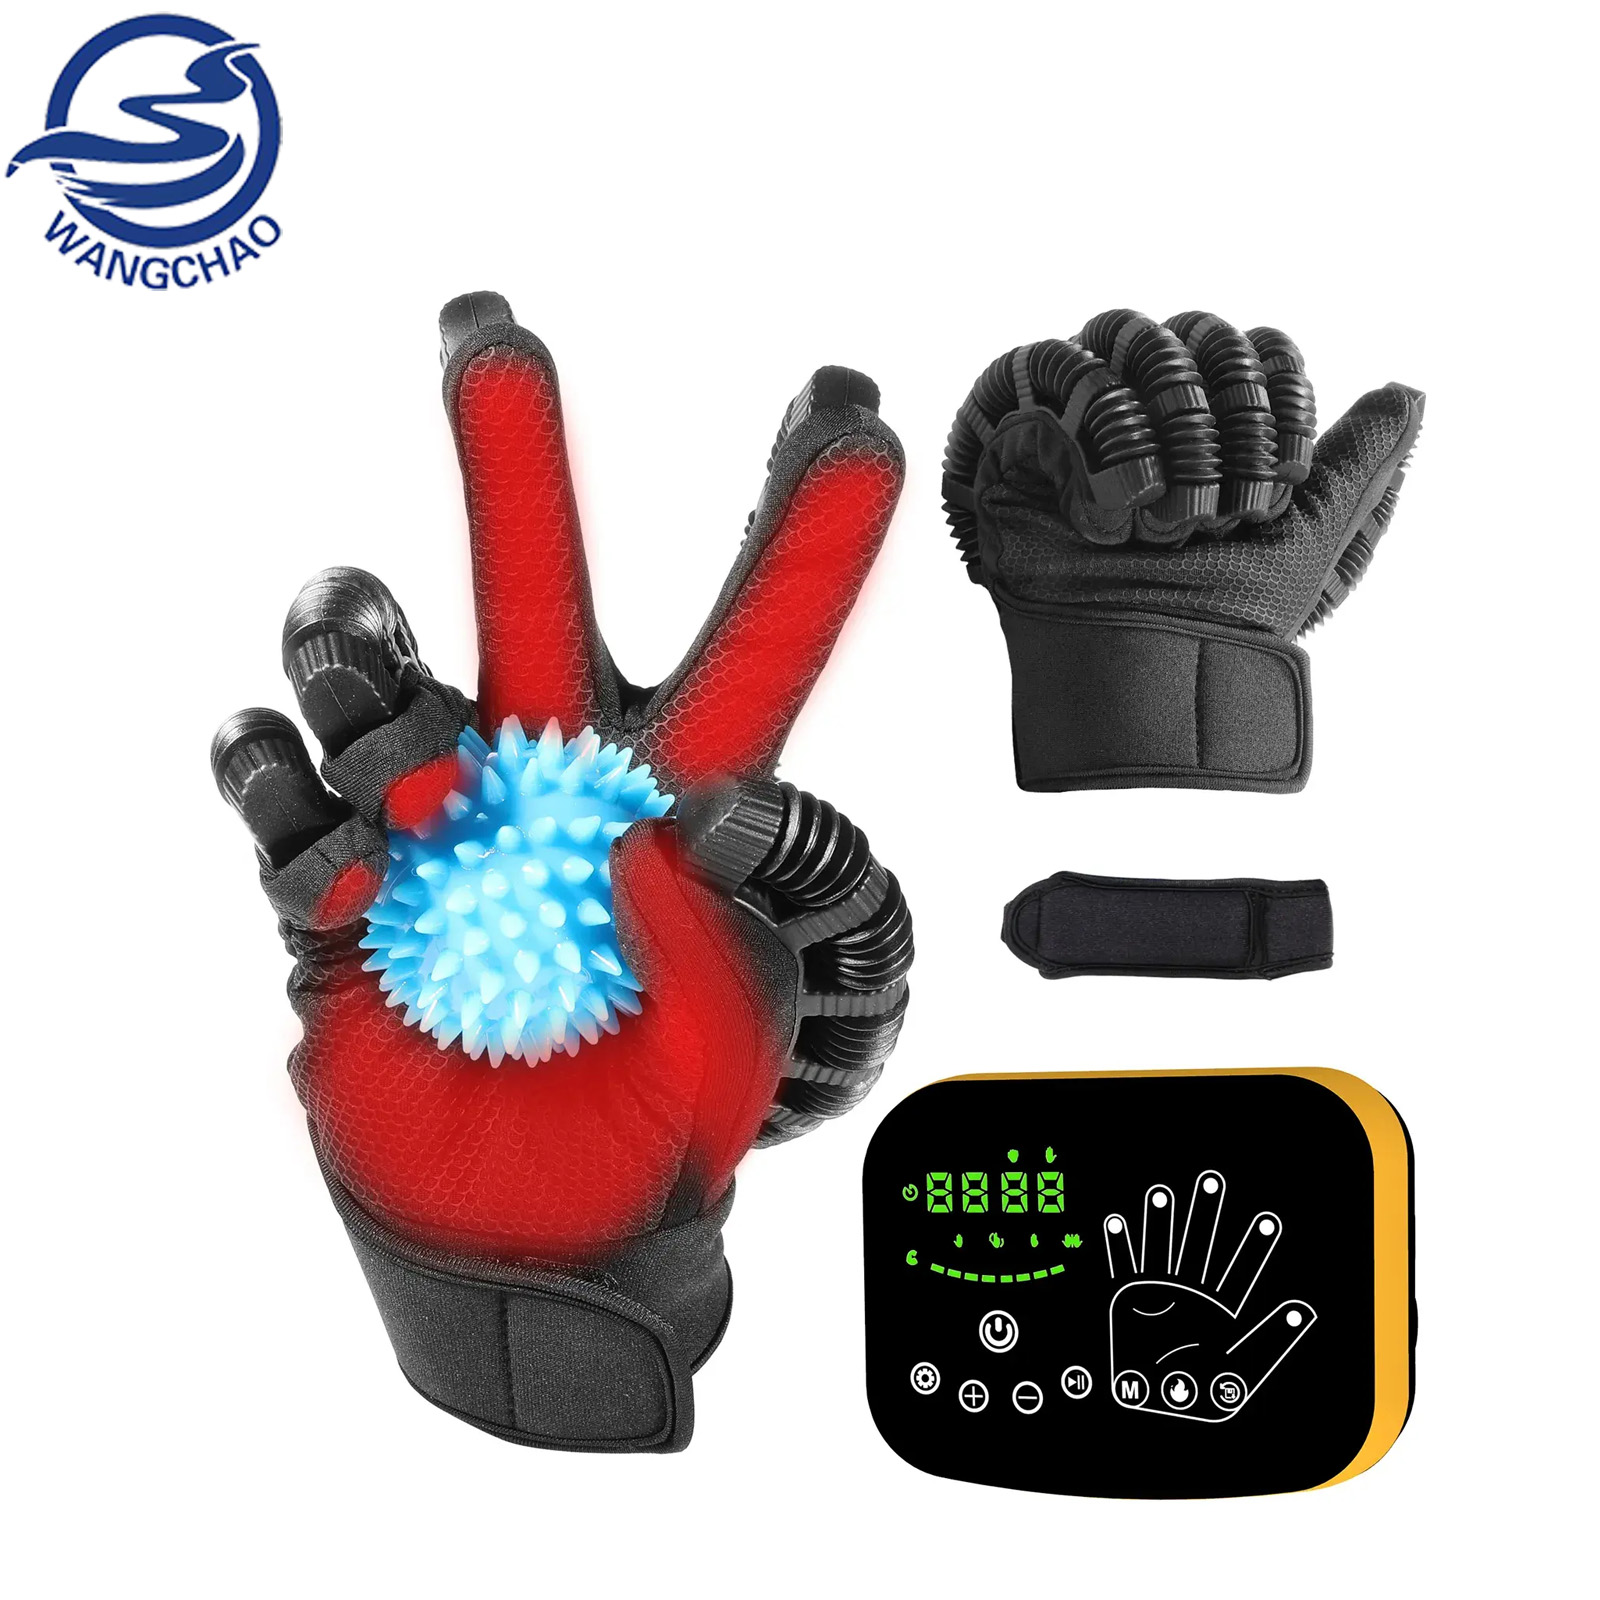 Home rehabilitation gloves GR-131